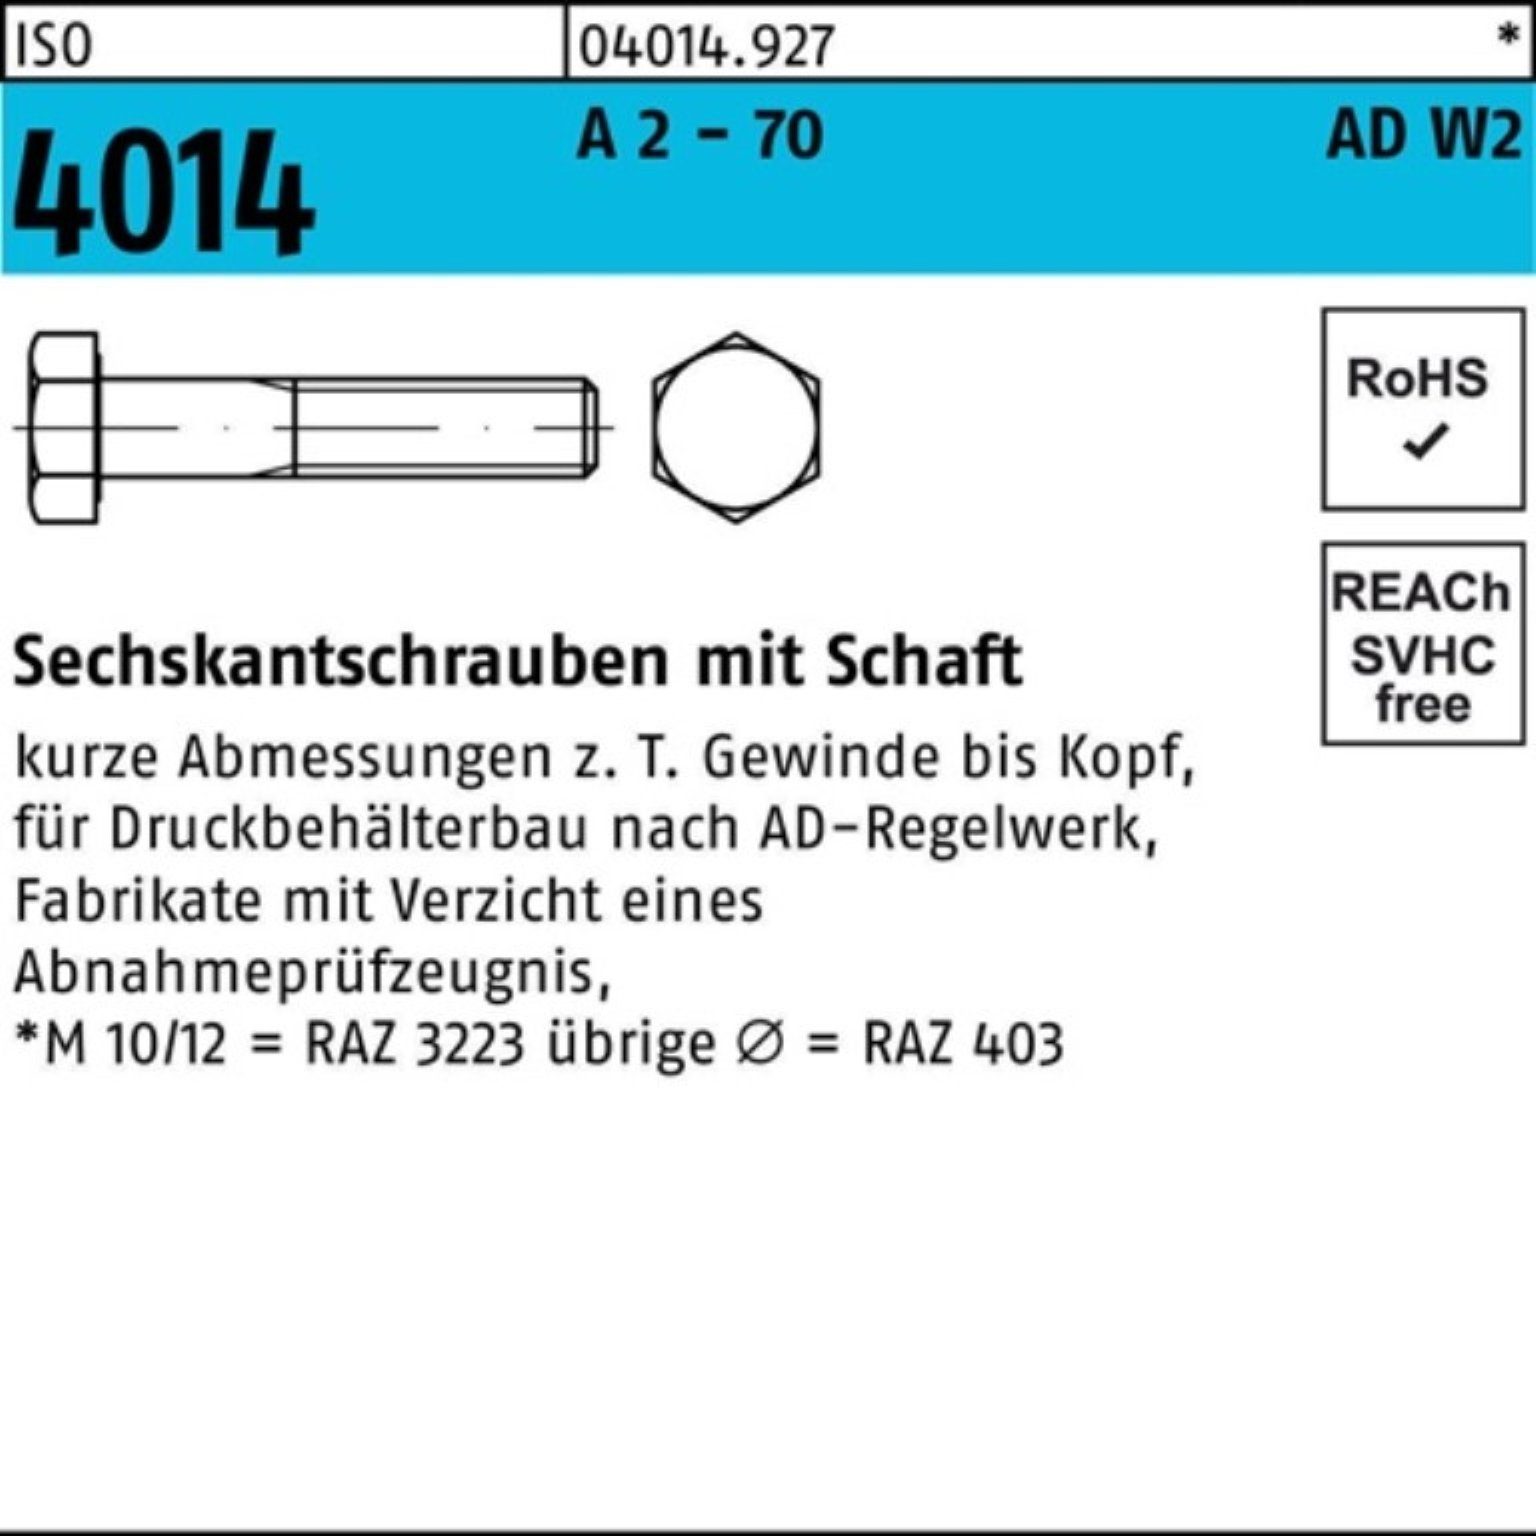 Bufab Sechskantschraube 100er Schaft 4014 ISO 2 90 M20x Sechskantschraube 25 A AD-W2 Pack 70 